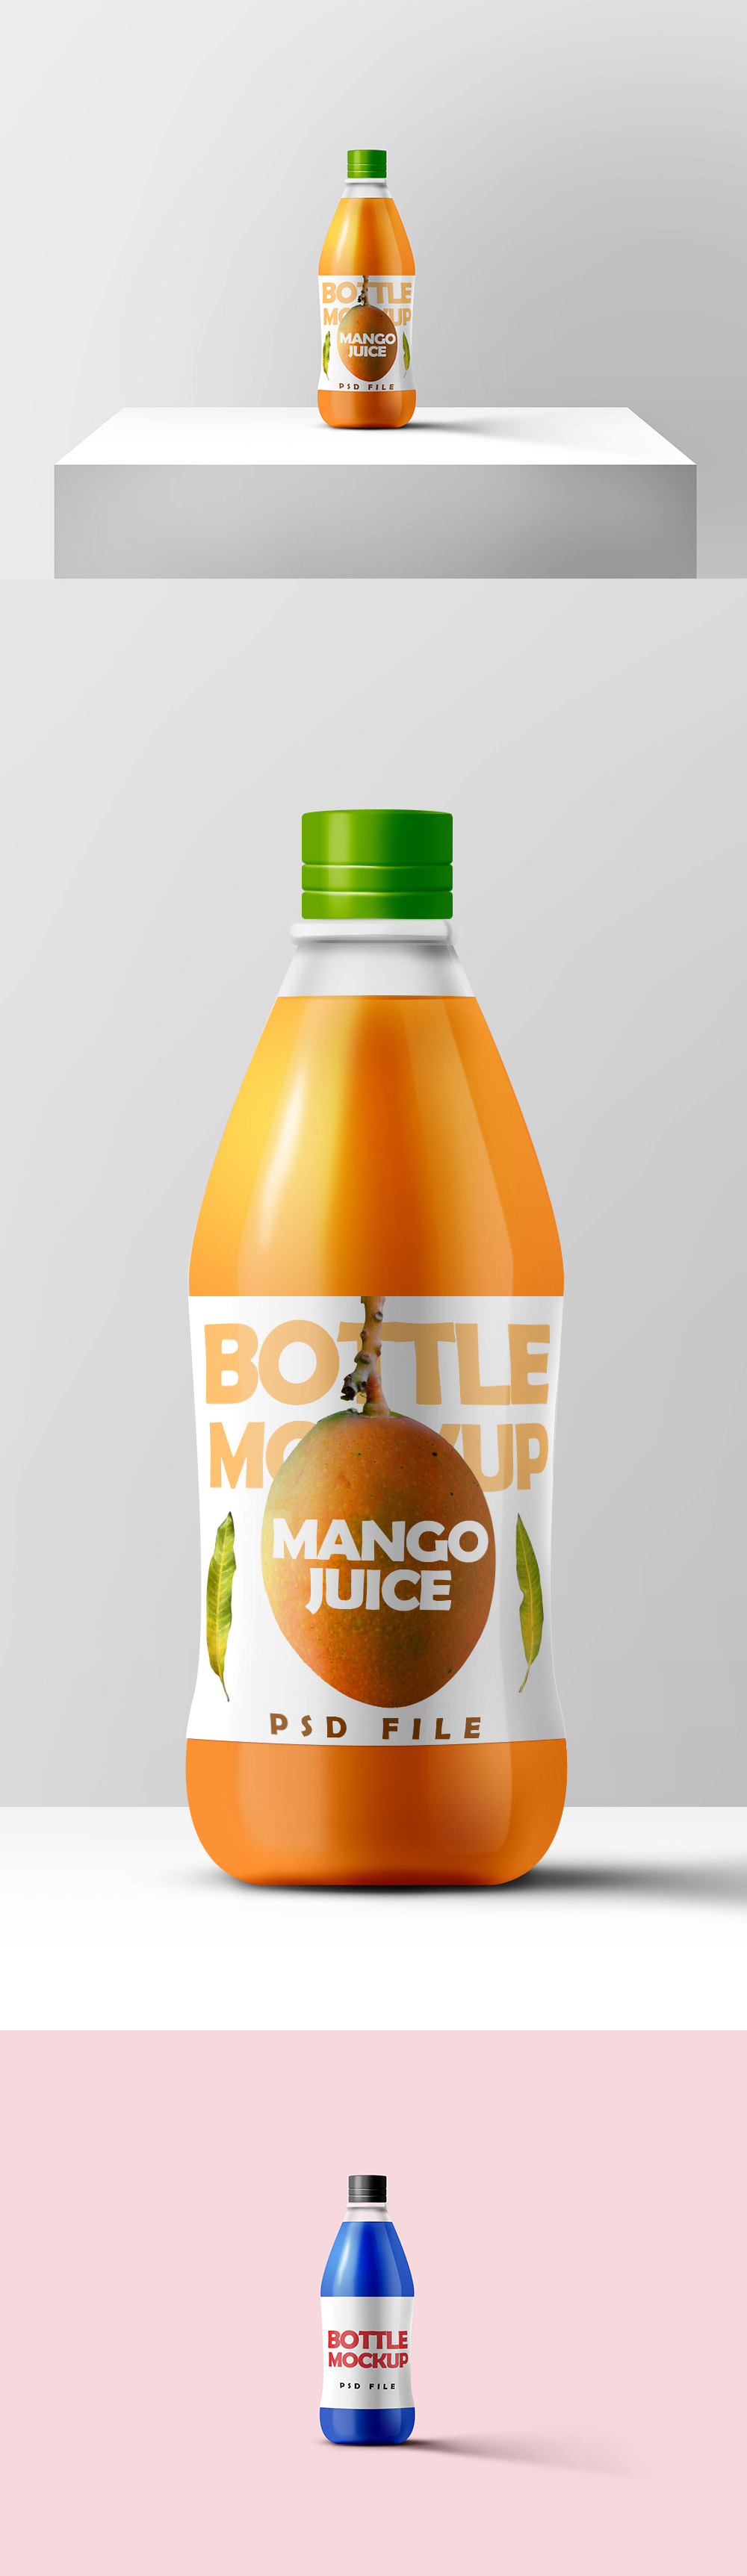 Juice Bottle Mockup